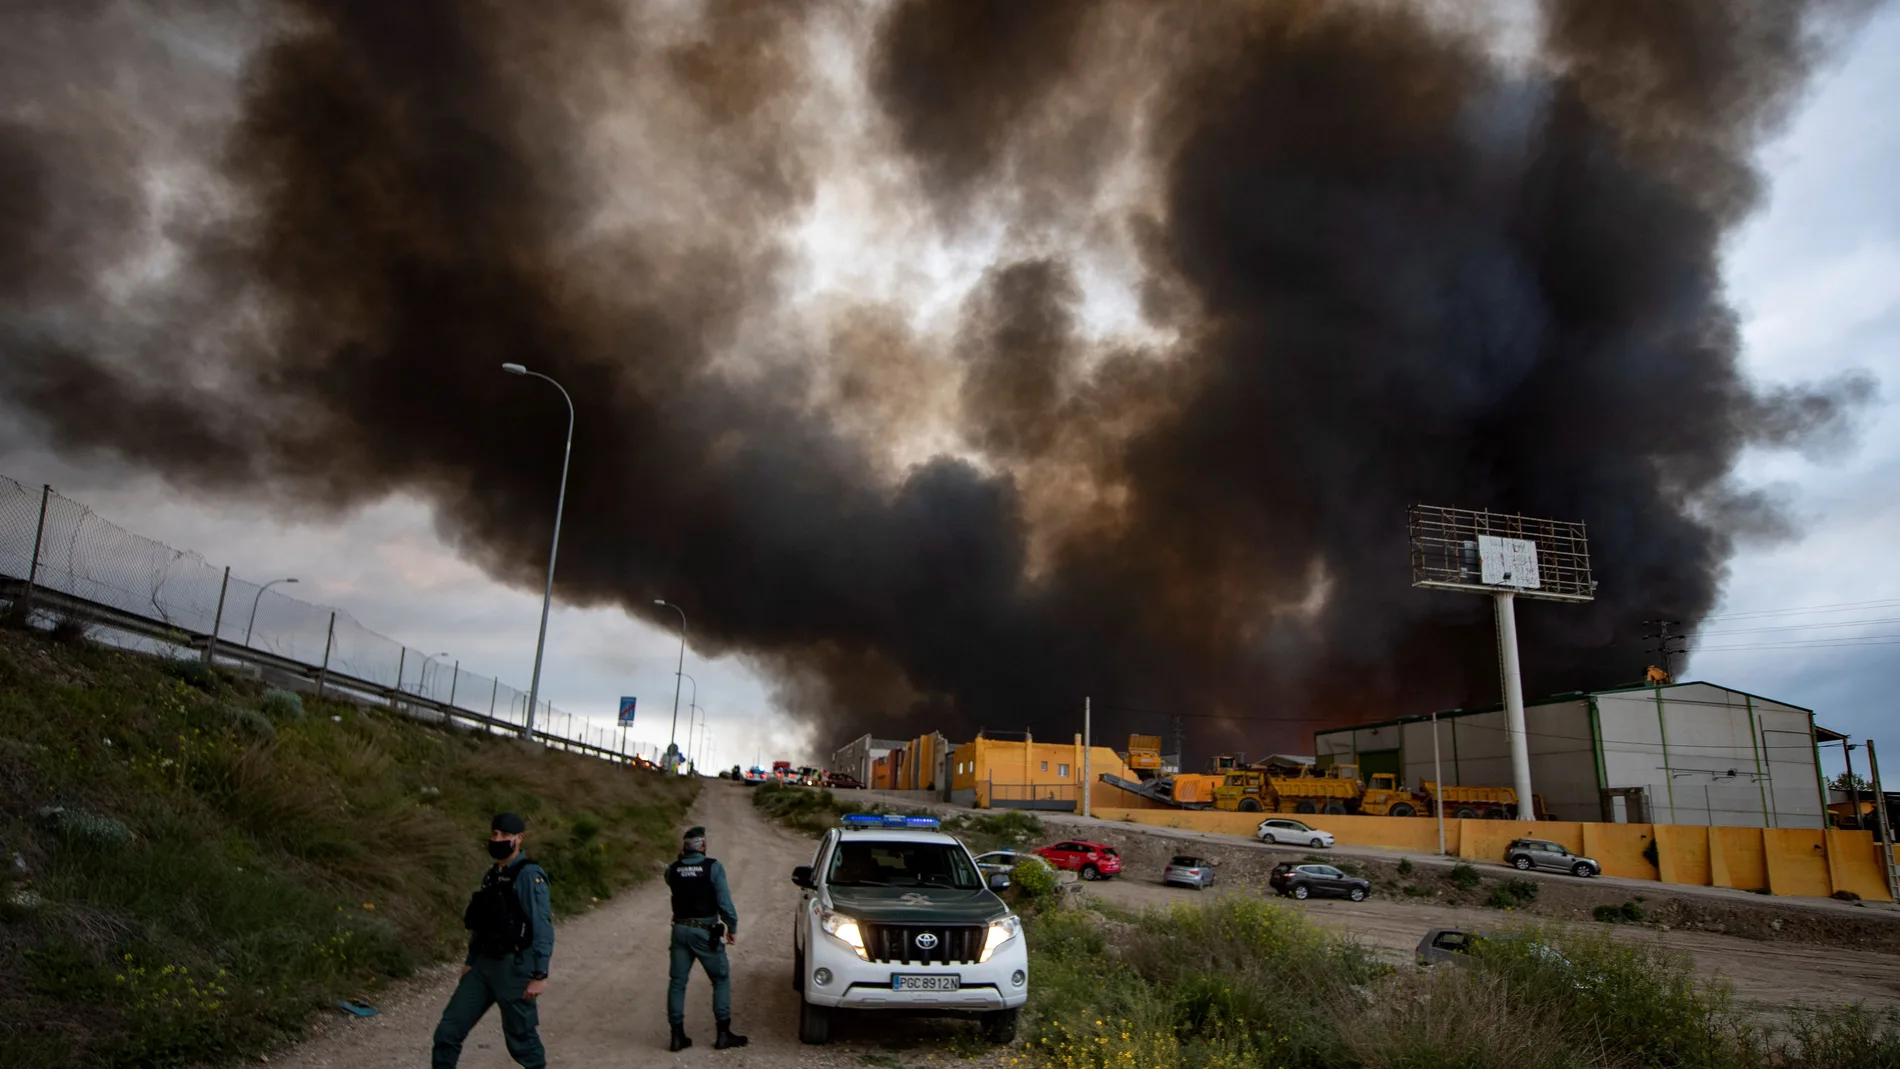 Columnas de humo en un incendio en polígono industrial de Seseña, Toledo